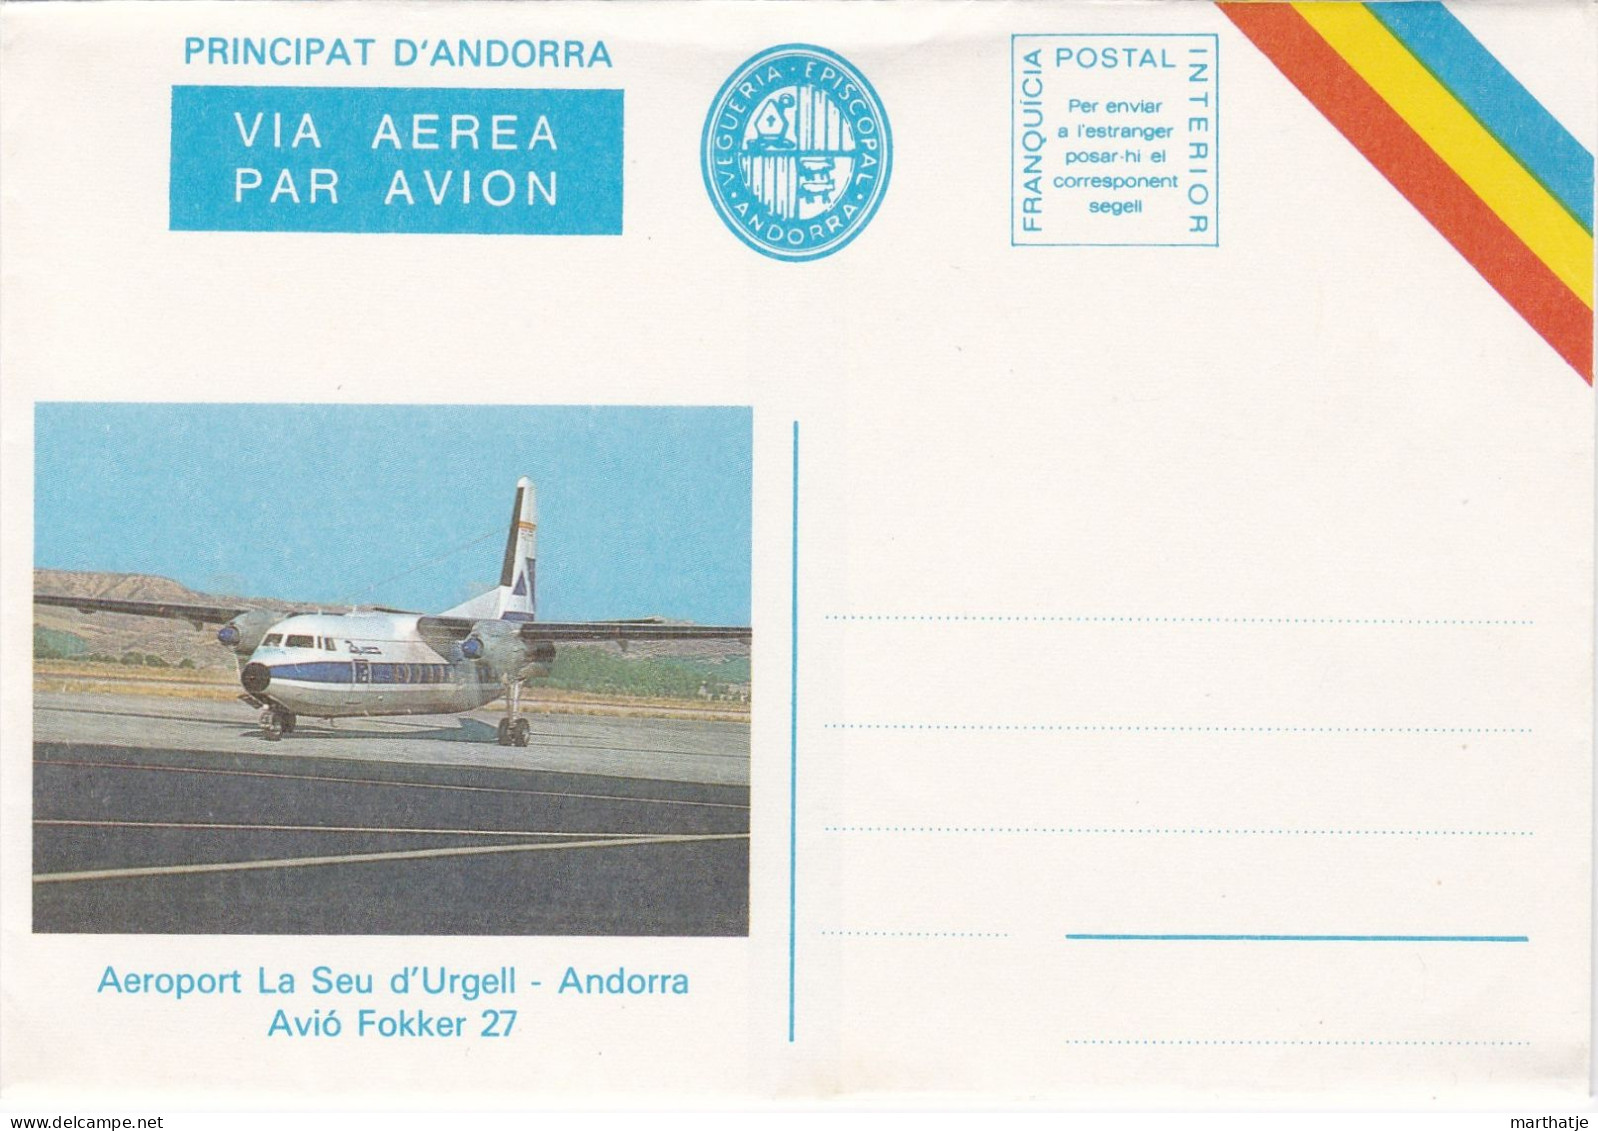 Principat D'Andorra -  Via Aerea Par Avion - Vegueria Episcopal - Aeroport La Seu D'Urgell - Avio Fokker 27 - Andorra - Episcopale Vignetten